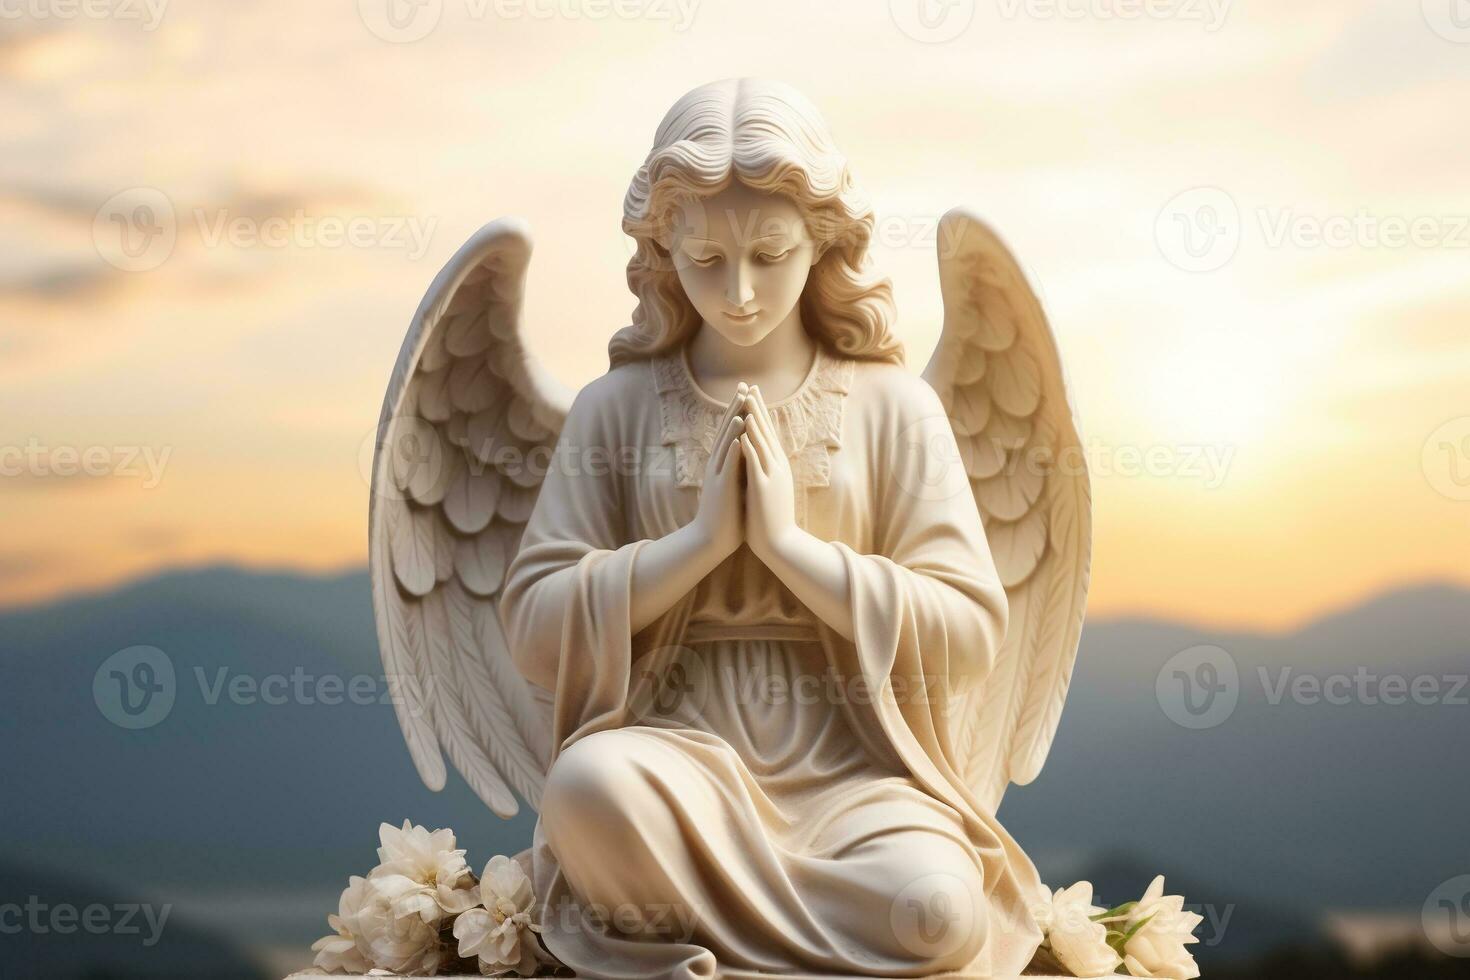 engel standbeeld met zonsopkomst in de achtergrond, religie en geestelijkheid concept. ai gegenereerd foto